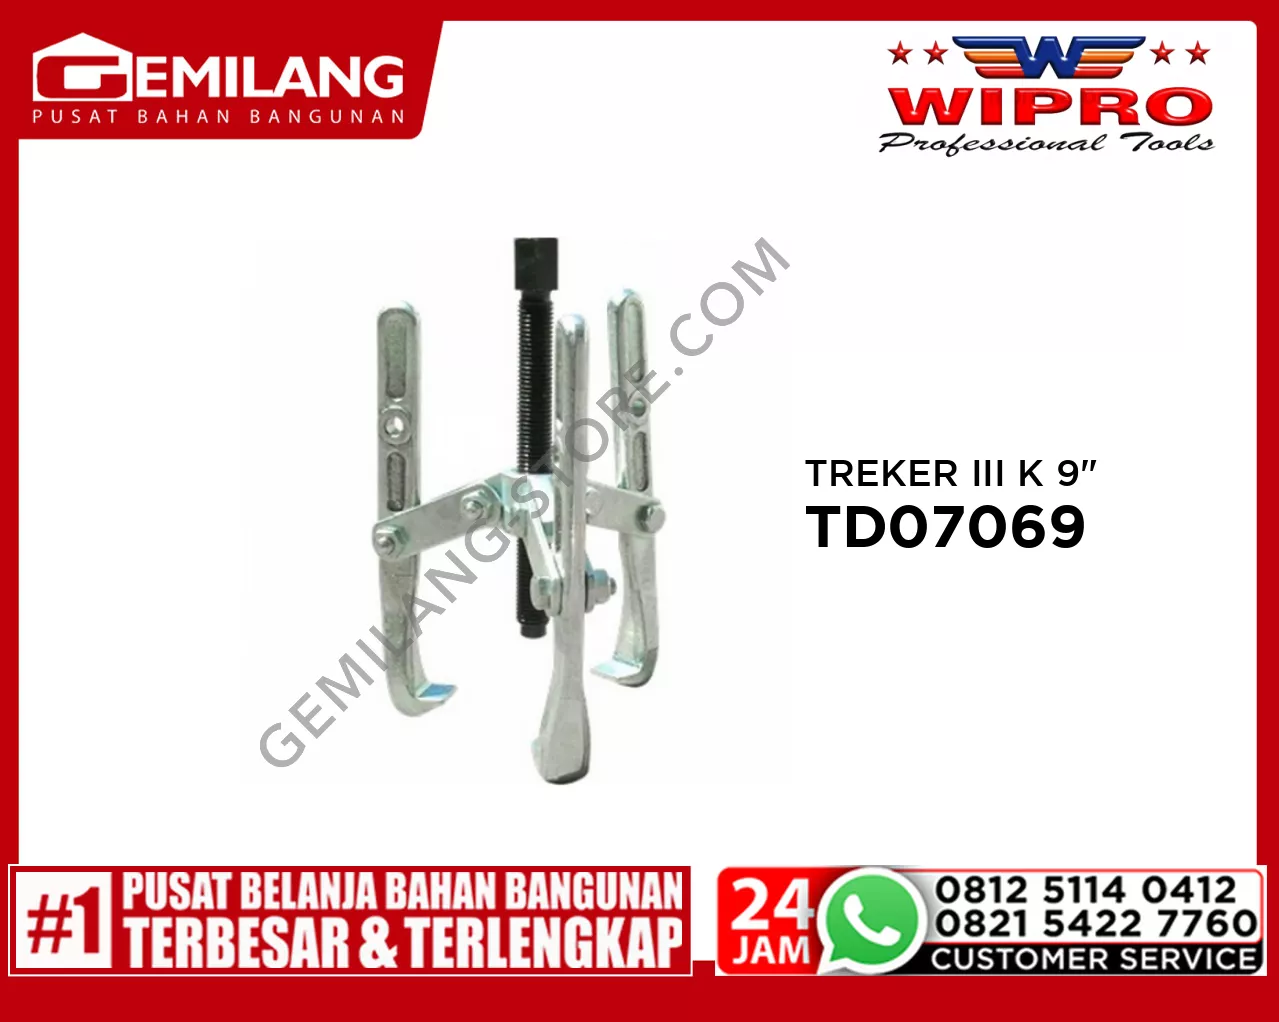 WIPRO TREKER III K TD07069 9inch (35-230)